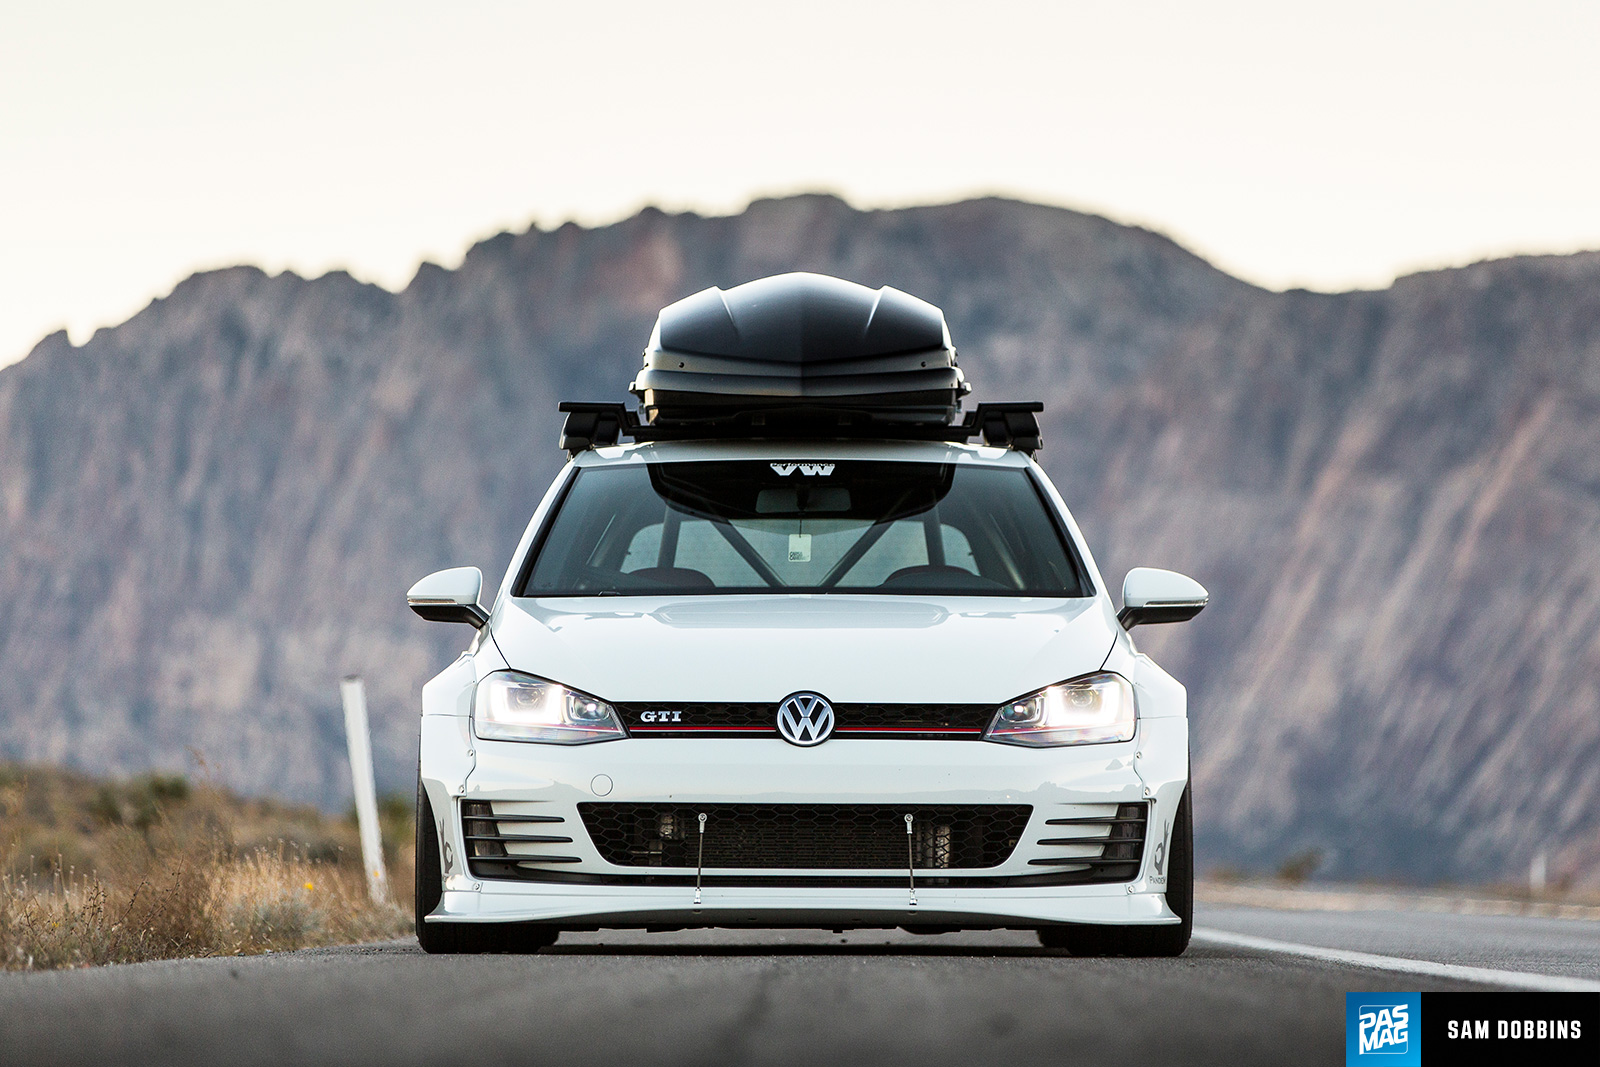 11 Sam Dobbins 2015 Volkswagen GTI PASMAG